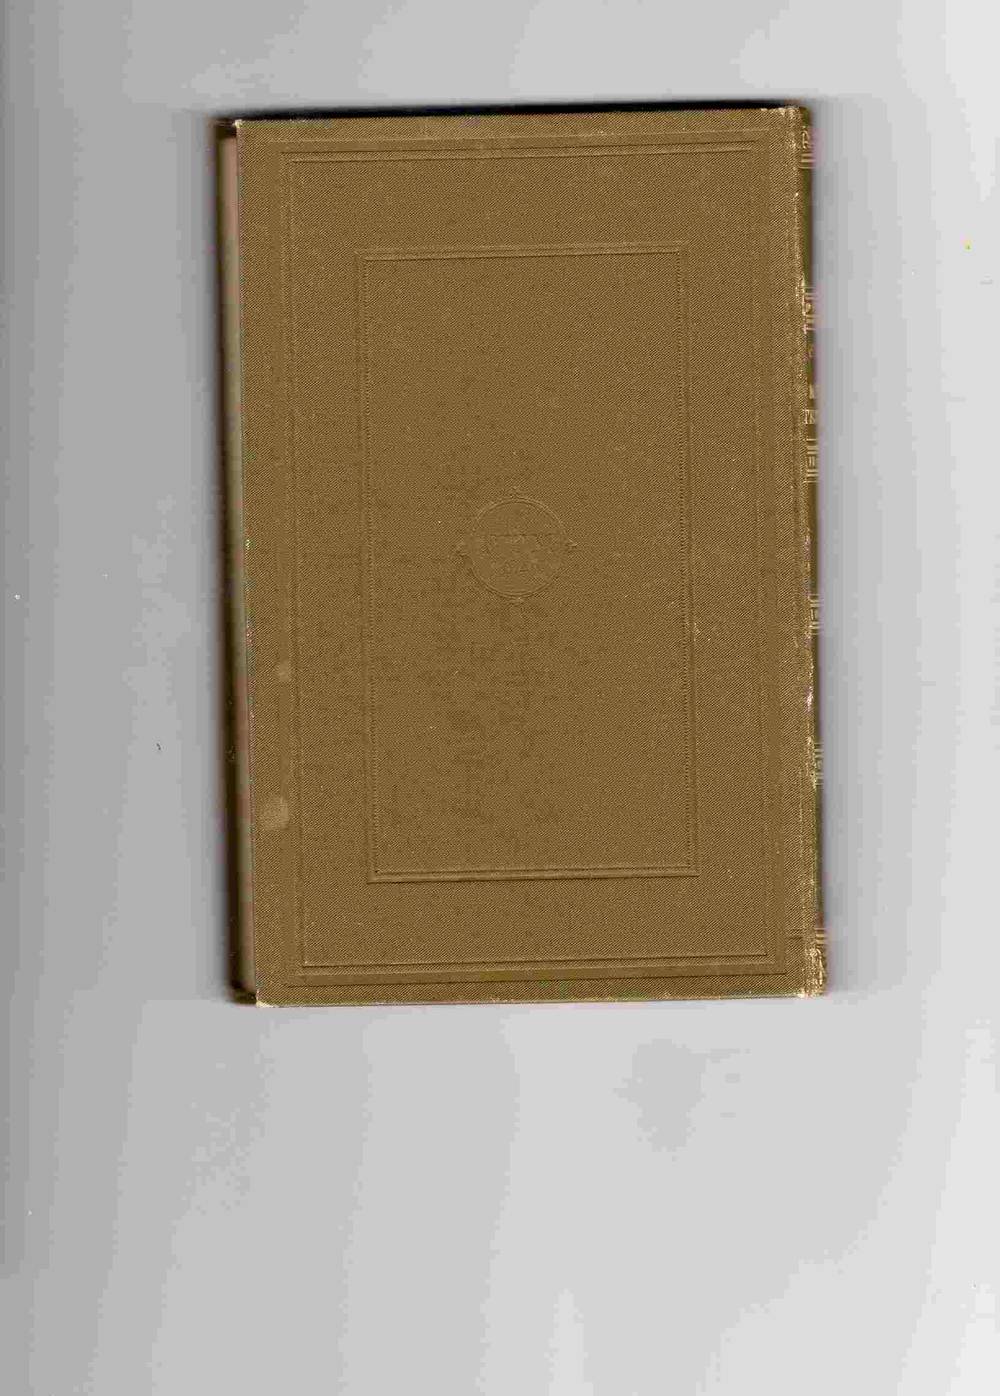 Charlotte Koren Moderens testamente 1894 Mosegrønt originalbind Fortælling Malling pen